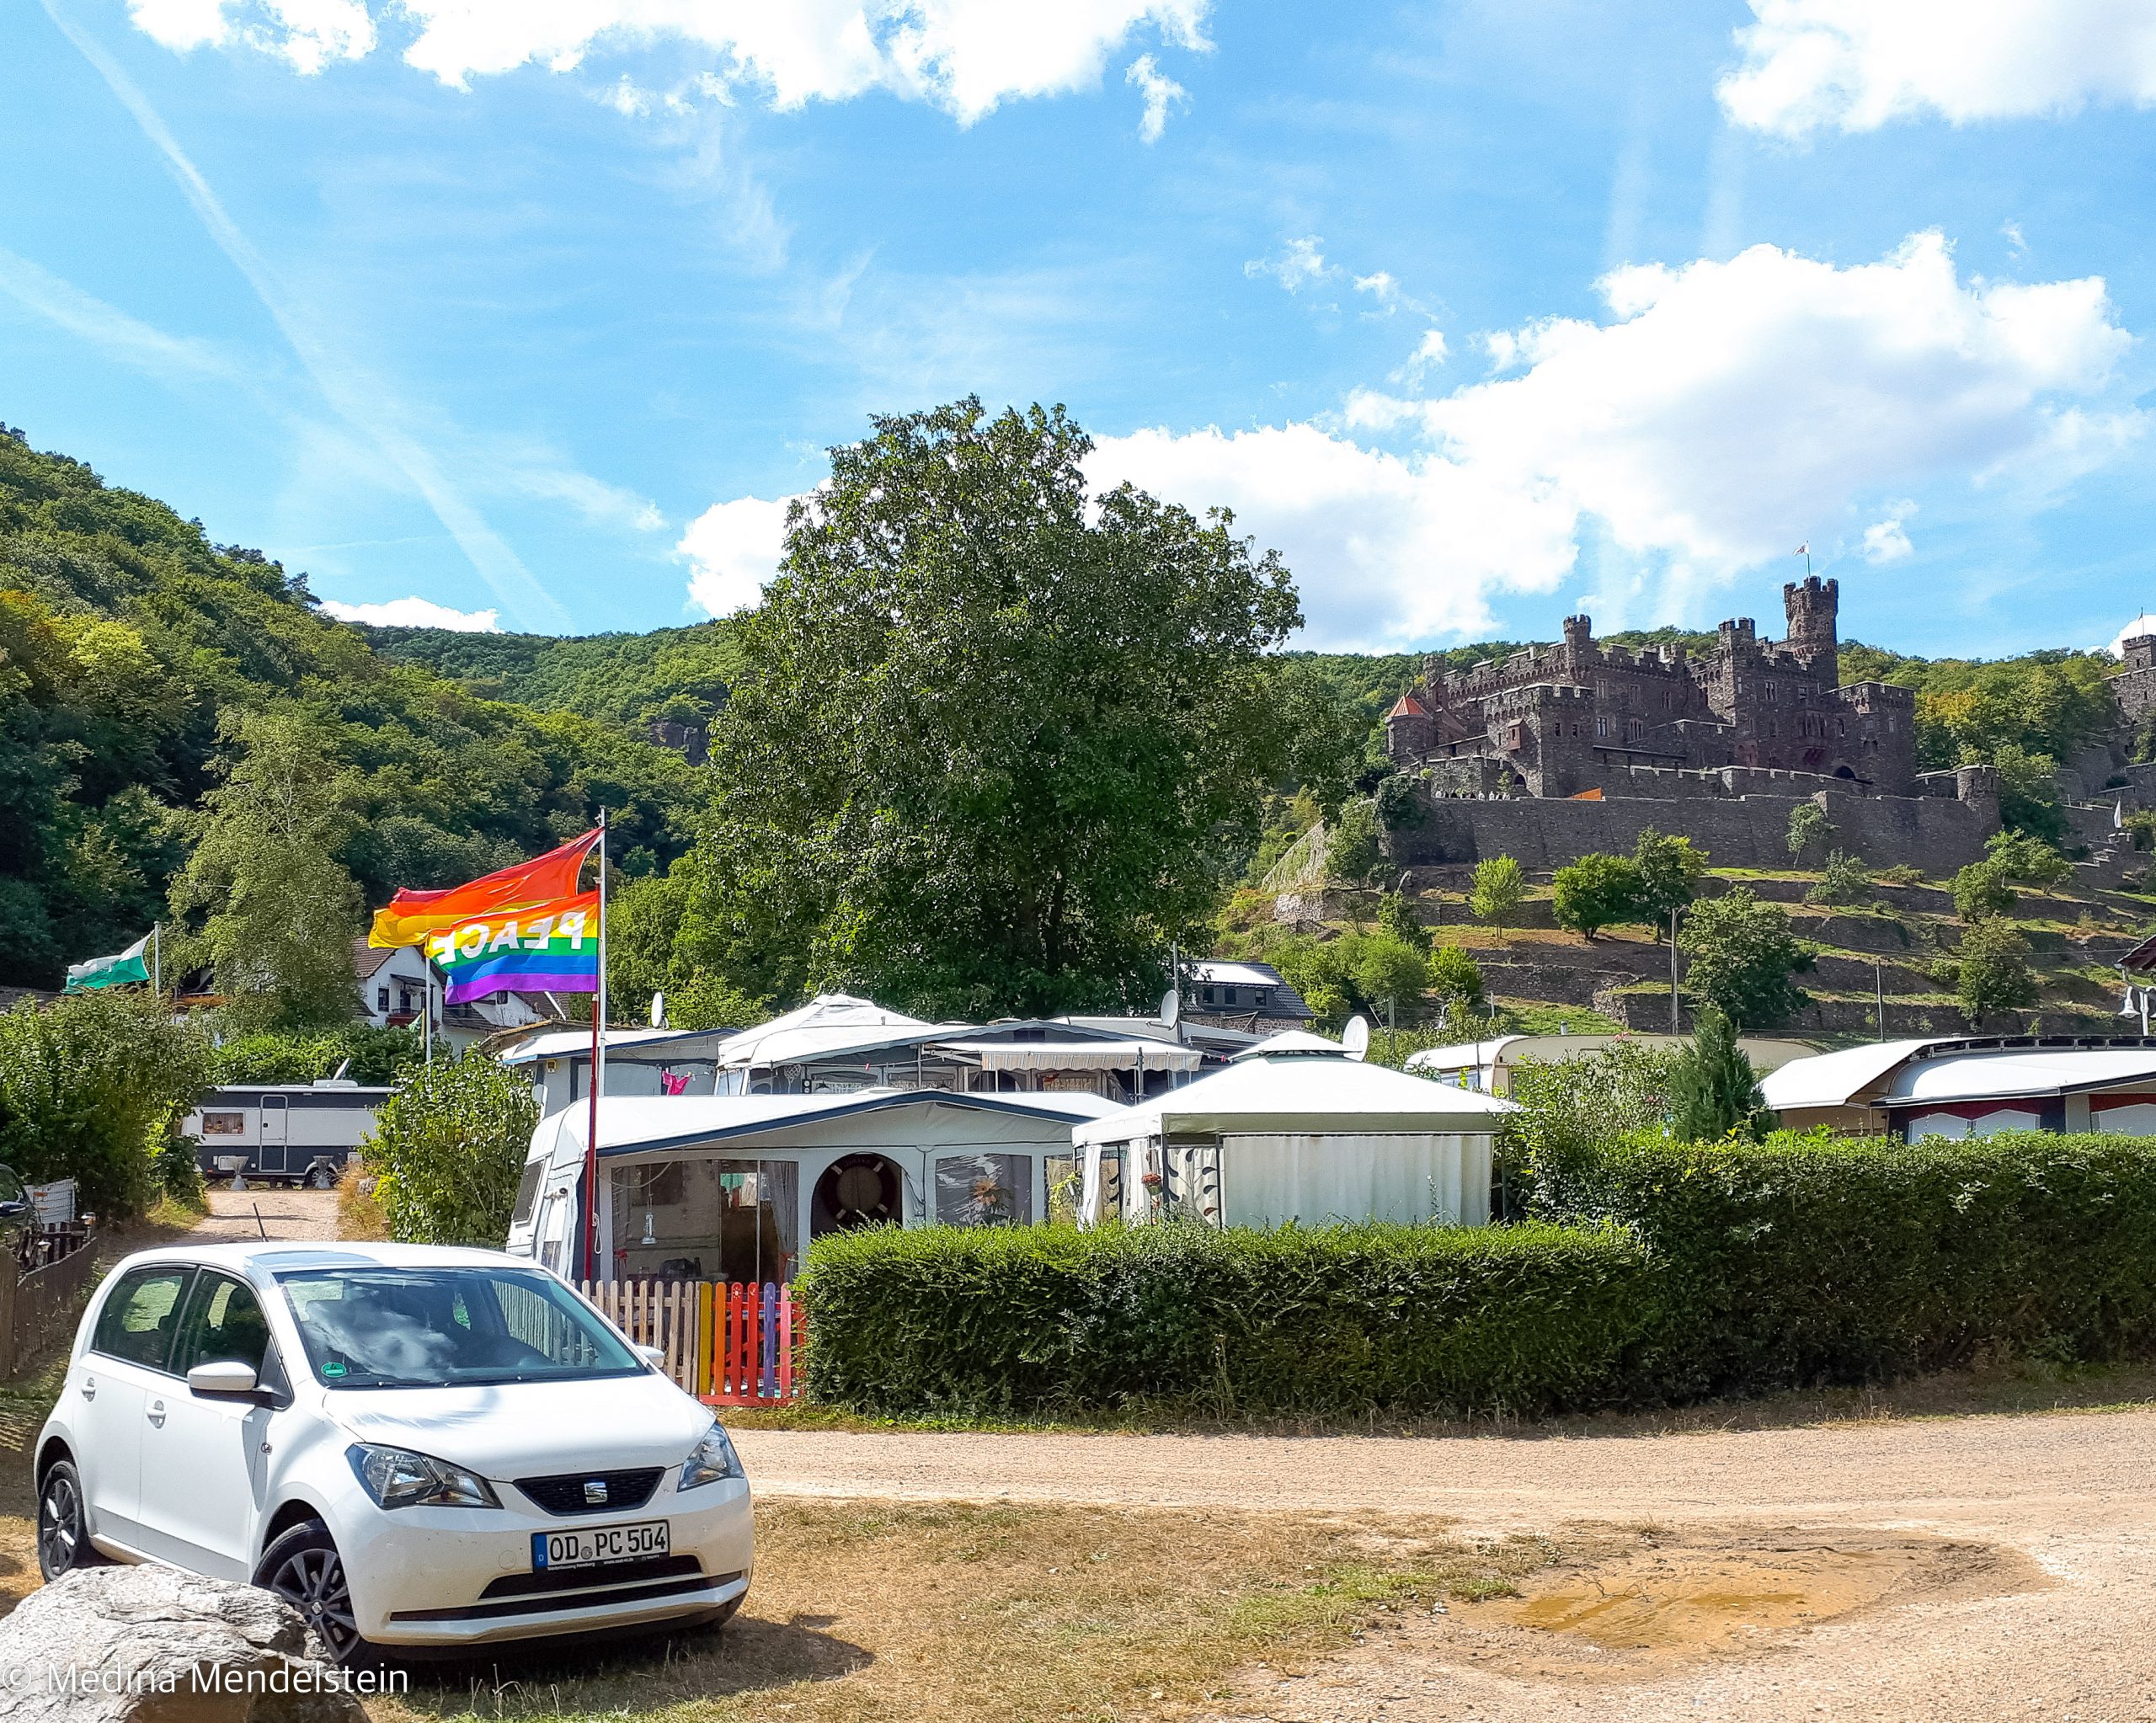 Campingplatz am Morgenbach, Trechtingshausen: Der Wohnwagen auf einem Dauercampingstellplatz von Medina Mendelstein, im Hintergrund ist eine Burg auf dem Weinberg.